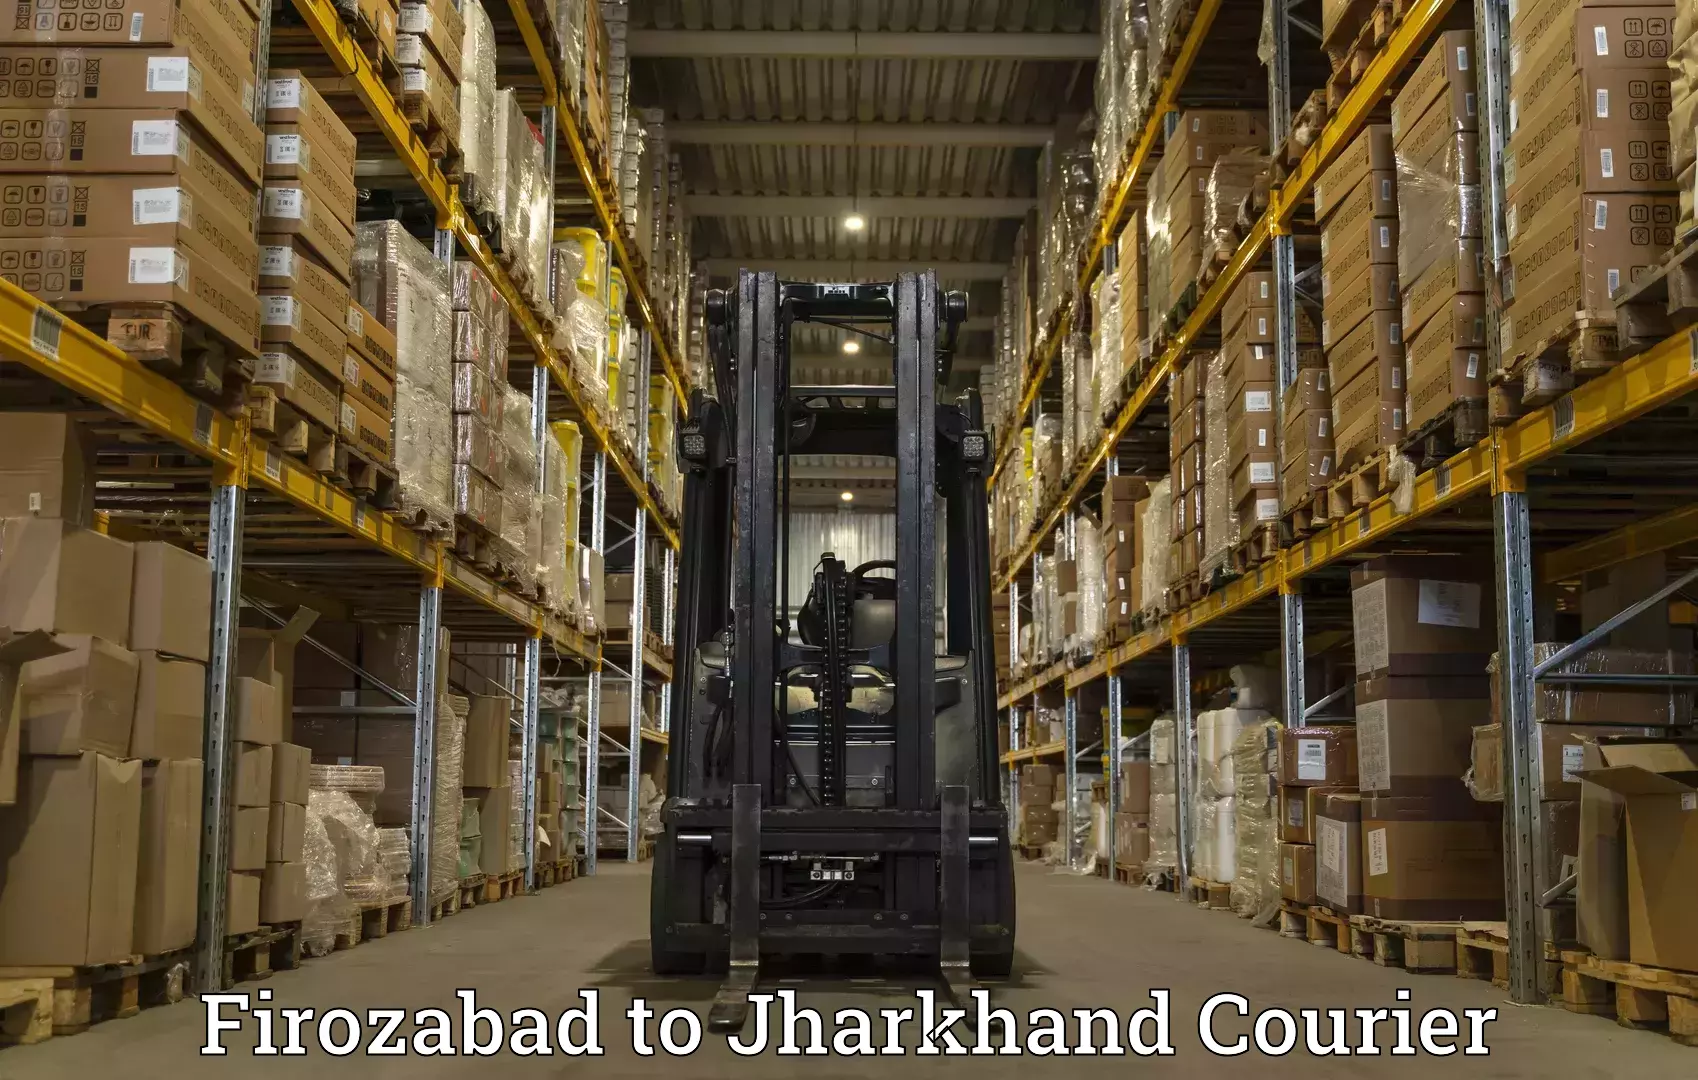 Reliable courier service Firozabad to Bokaro